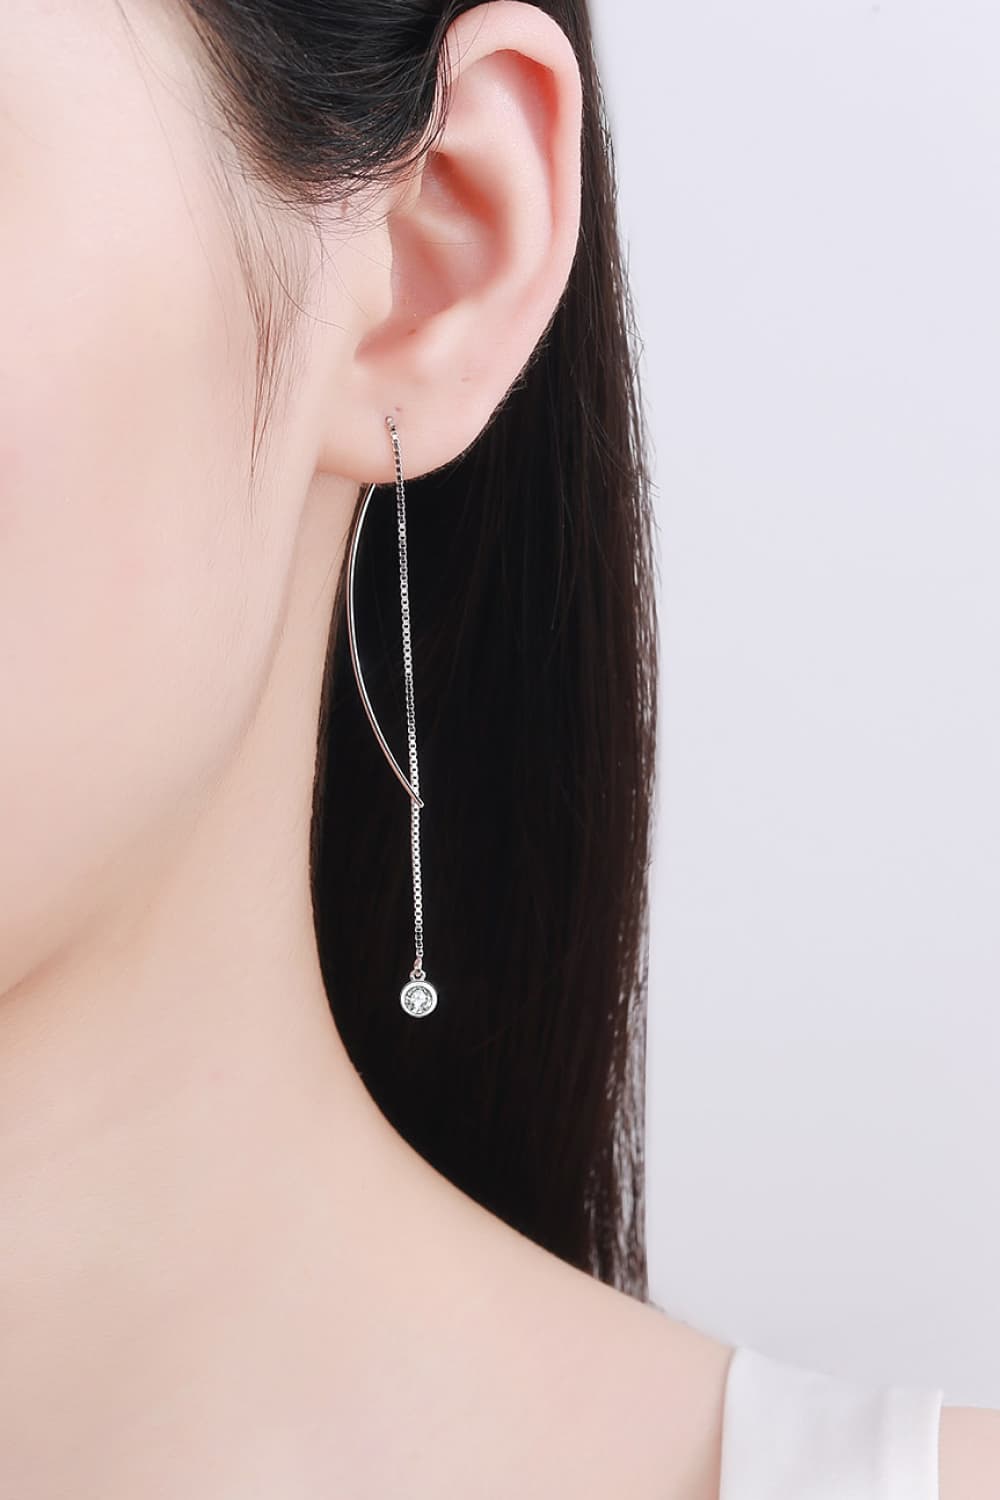 Light Gray Moissanite 925 Sterling Silver Threader Earrings